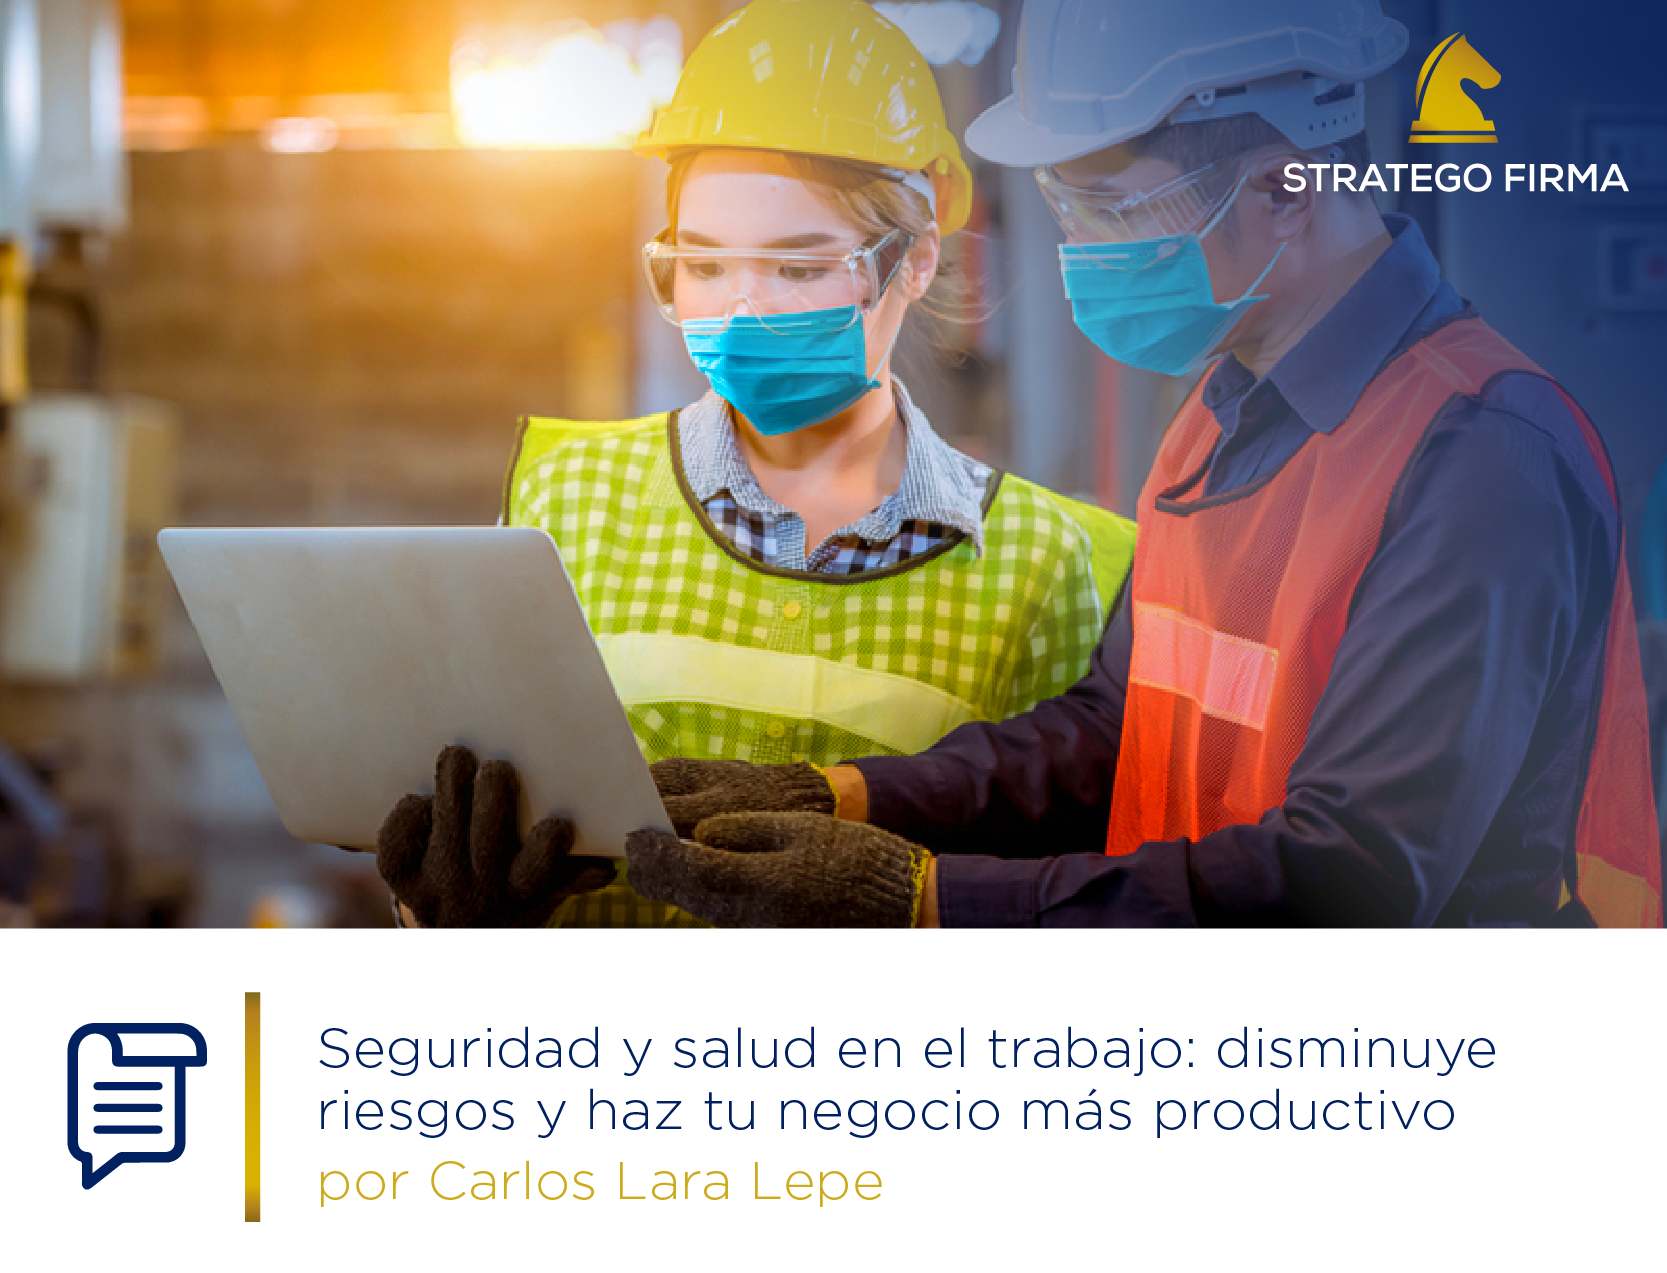 Las buenas prácticas en seguridad y salud en el trabajo mejoran la experiencia laboral del colaborador, impactando positivamente en los resultados.